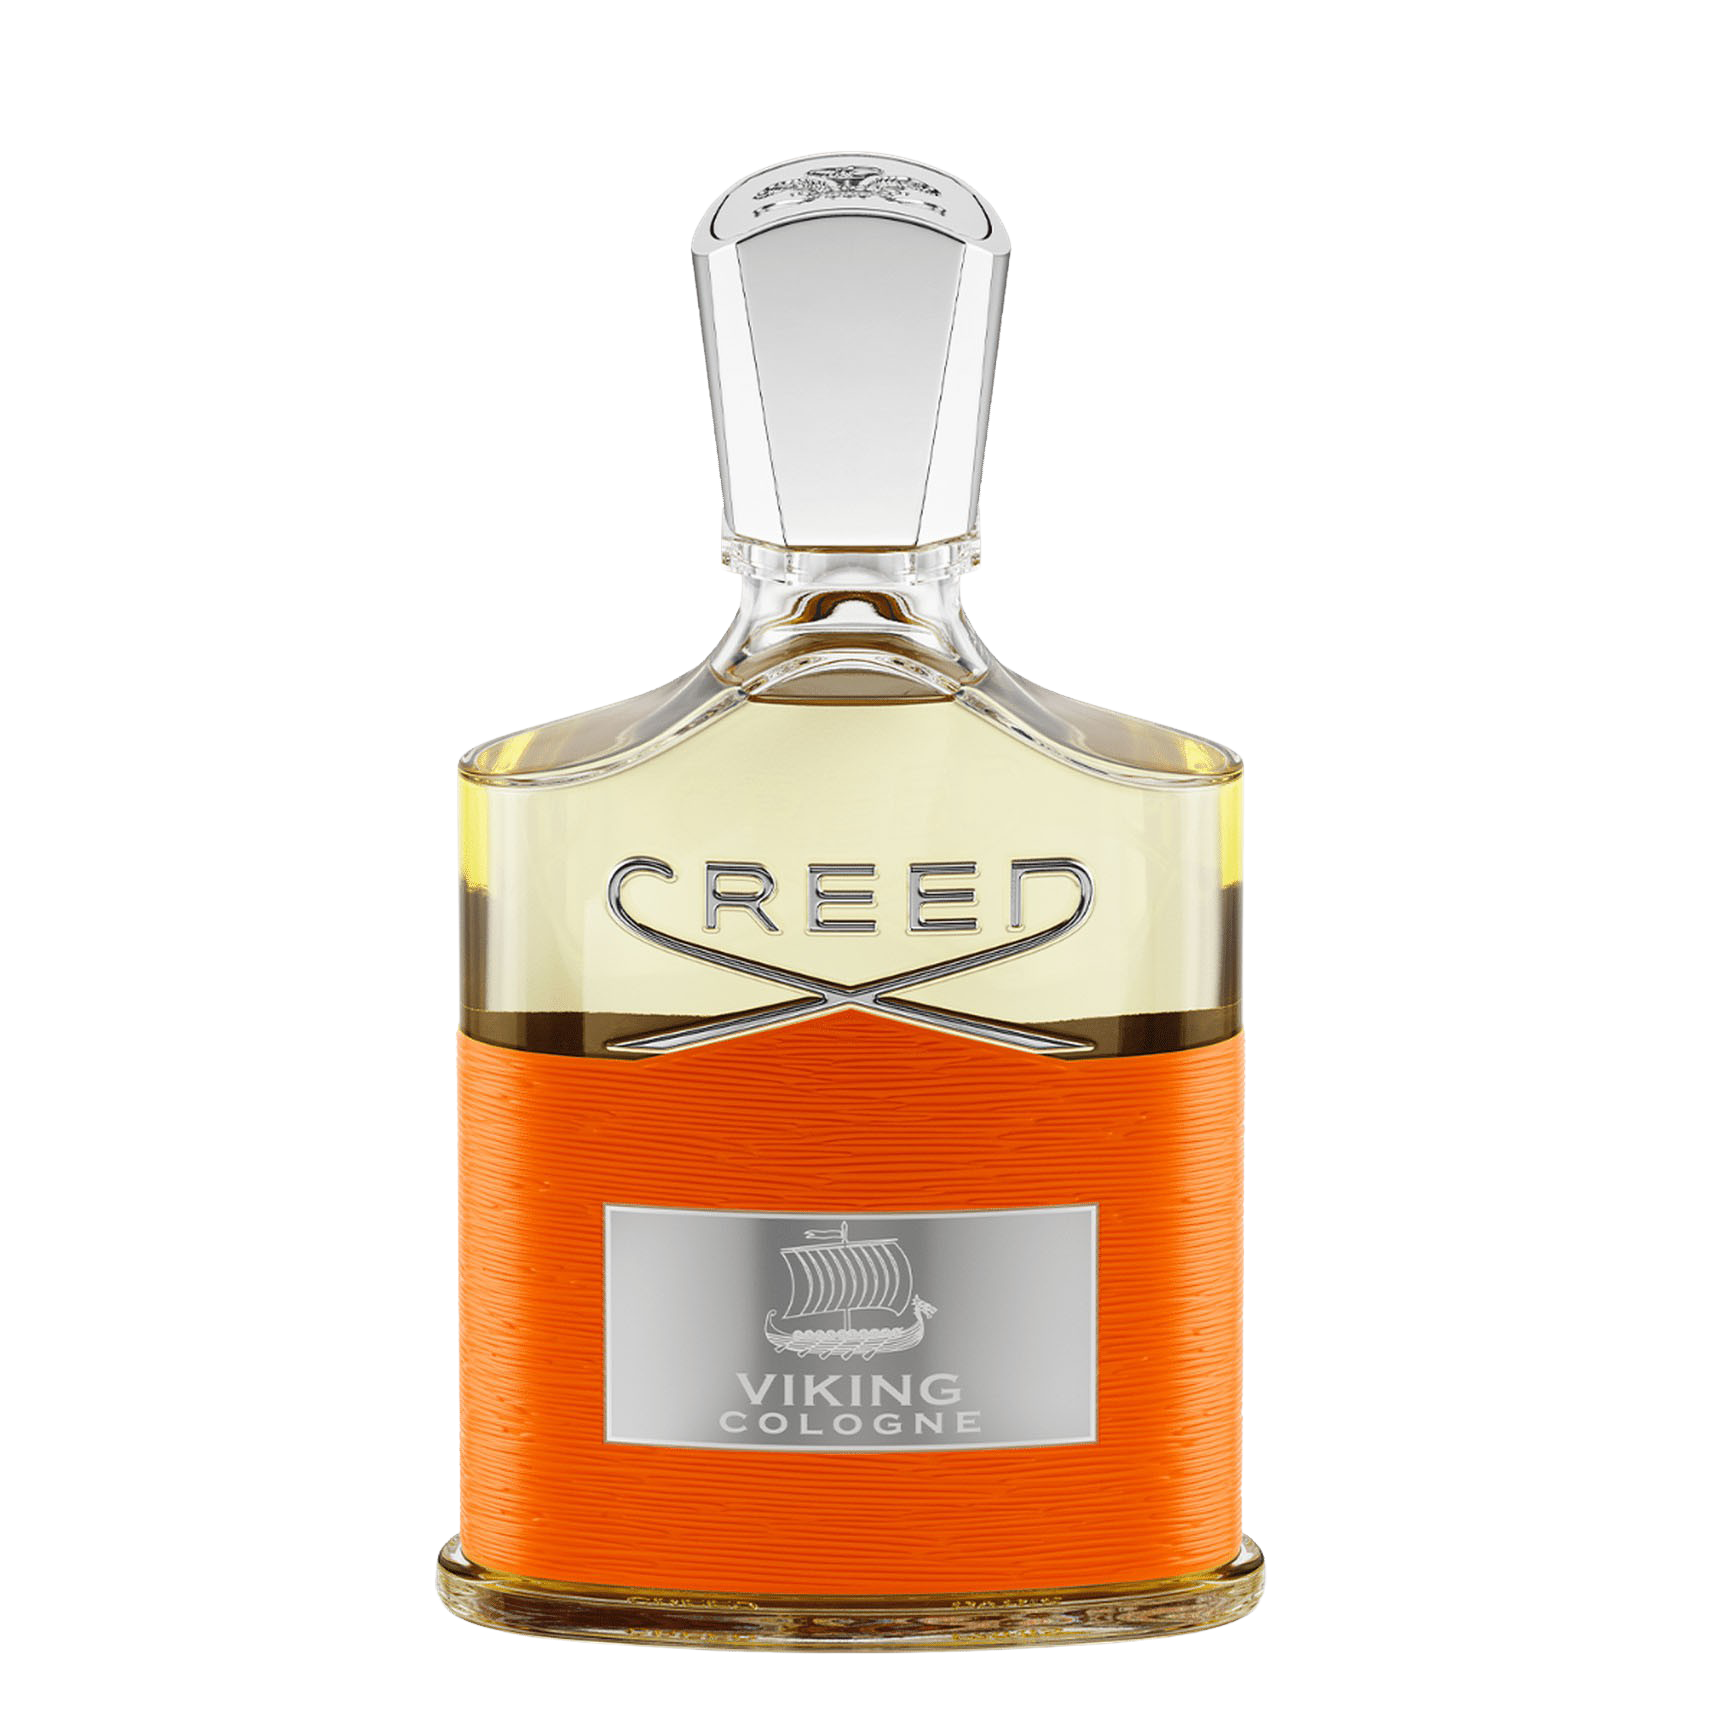 Creed Viking Cologne Eau de Parfum 100ml Feature